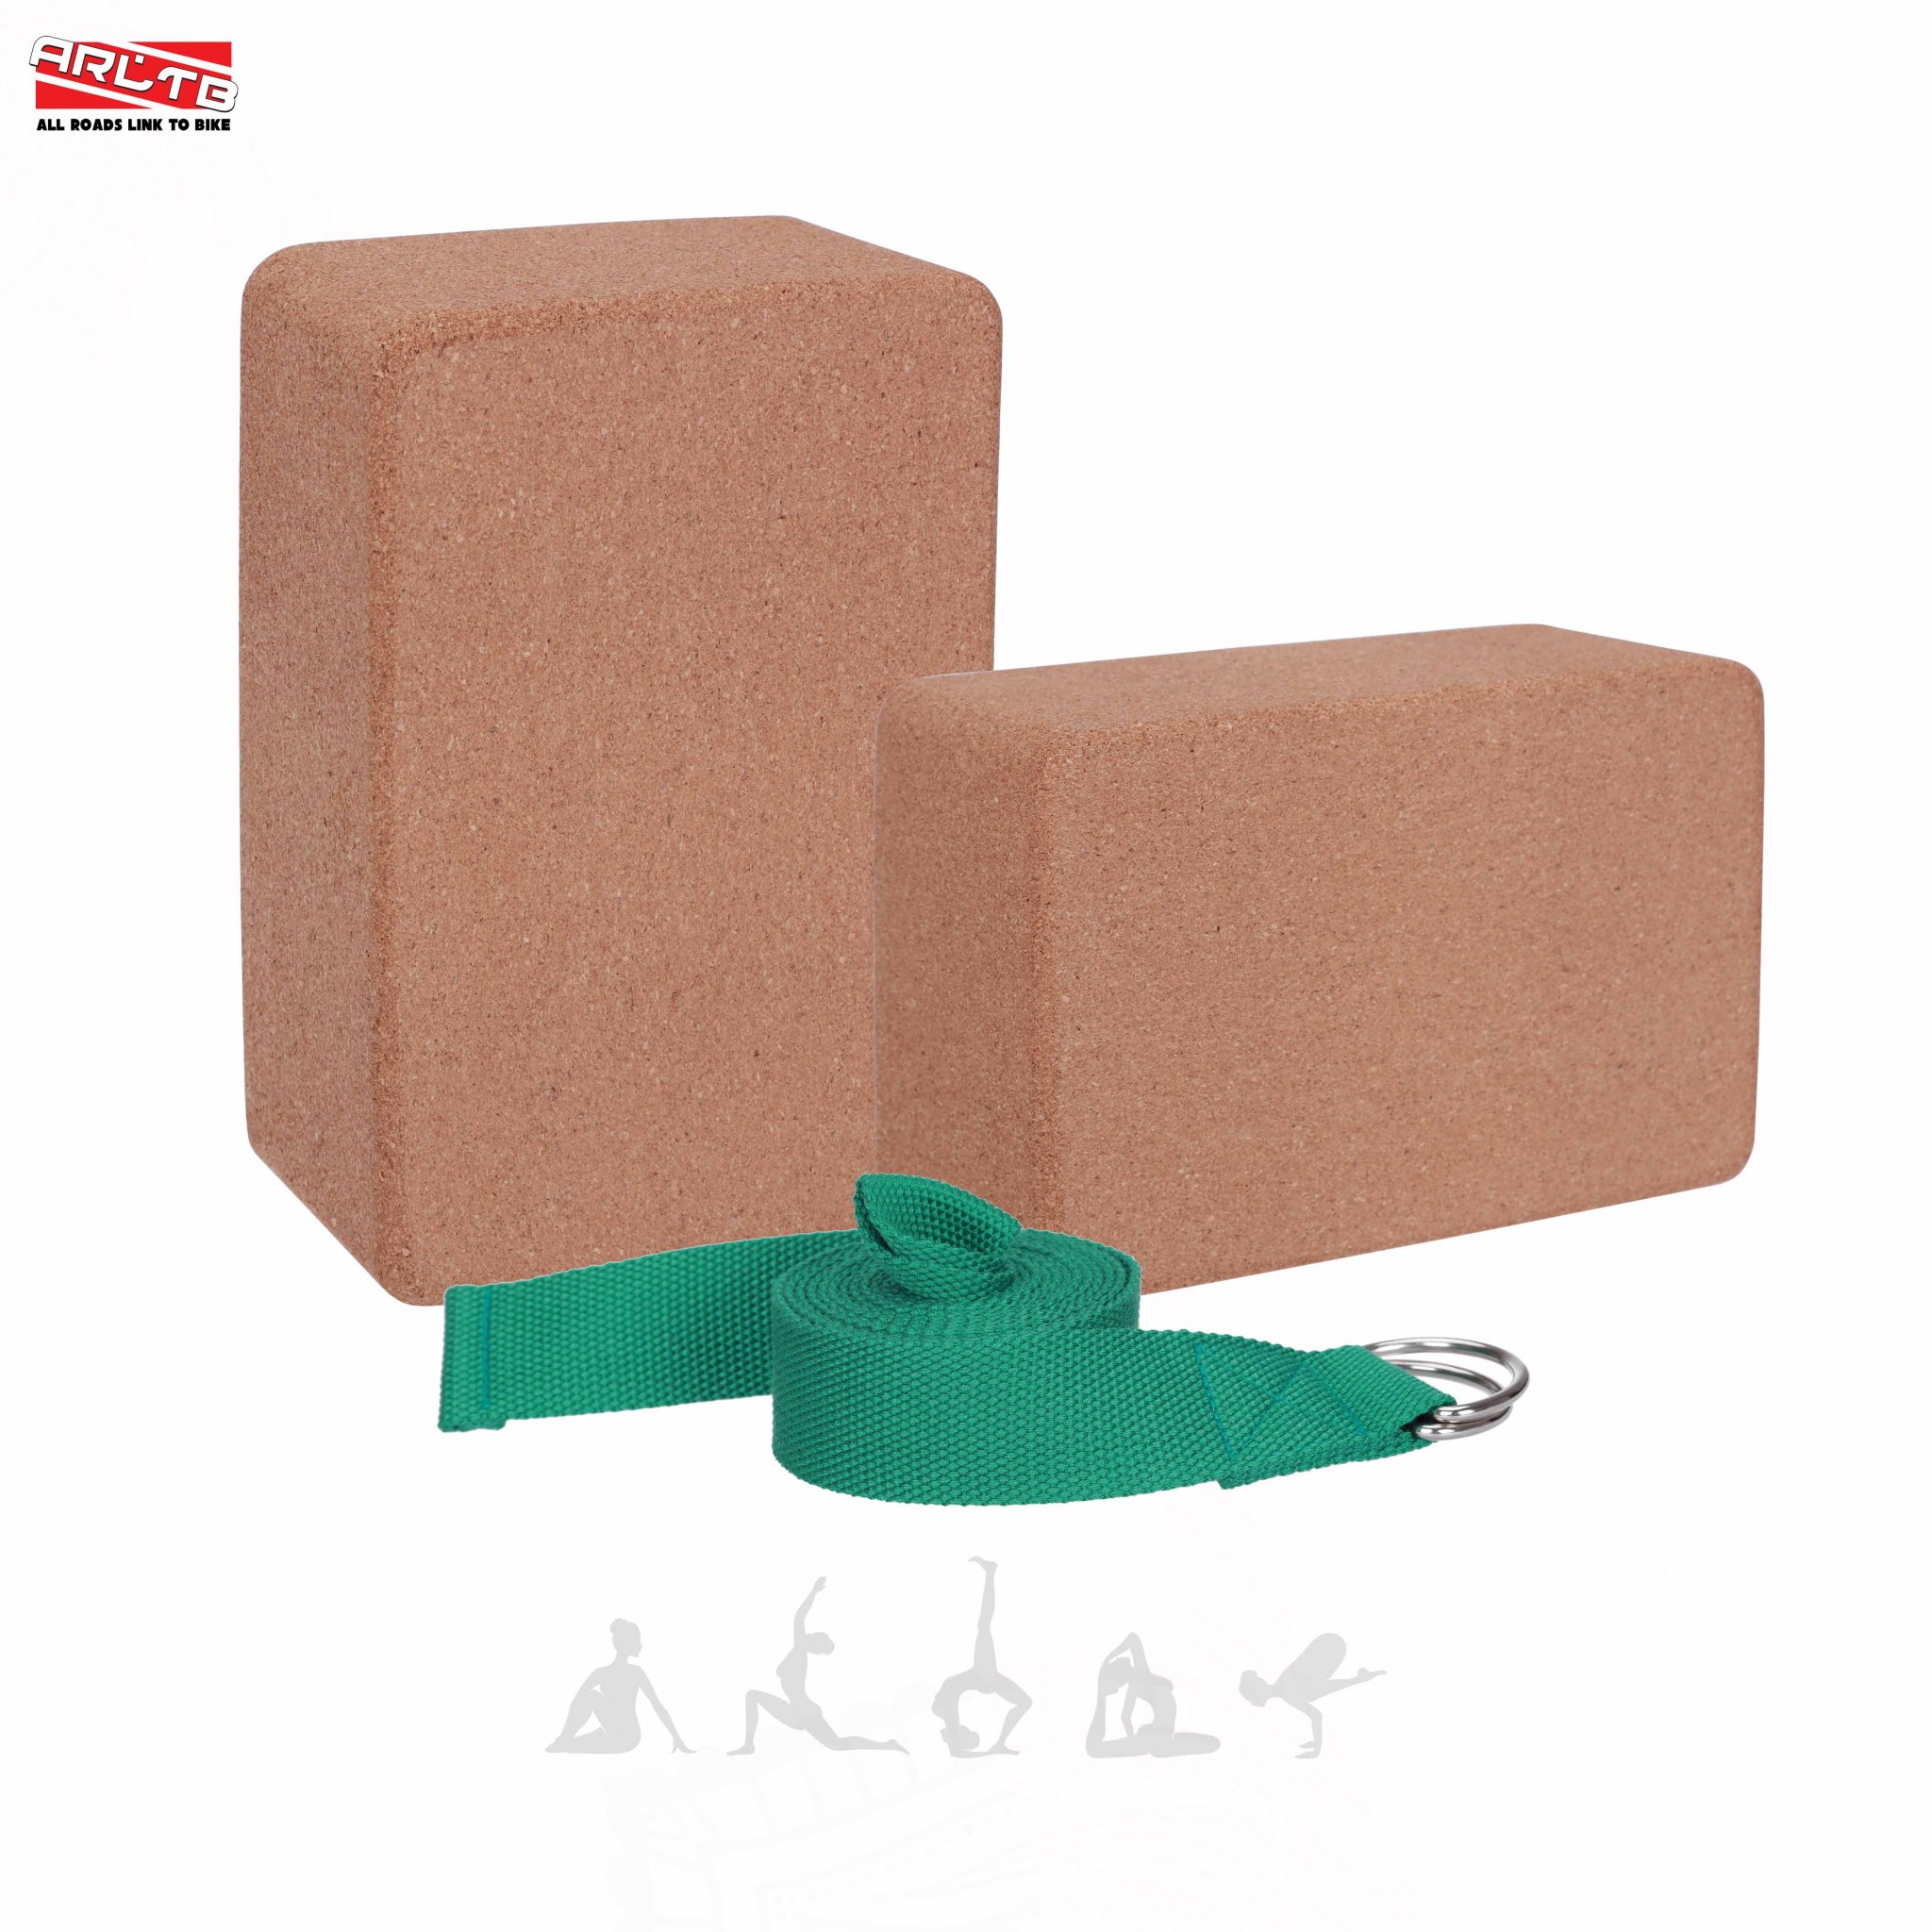 Buy Arltb Yoga Blocks Bricks and Strap Set (2 pack) with Metal D